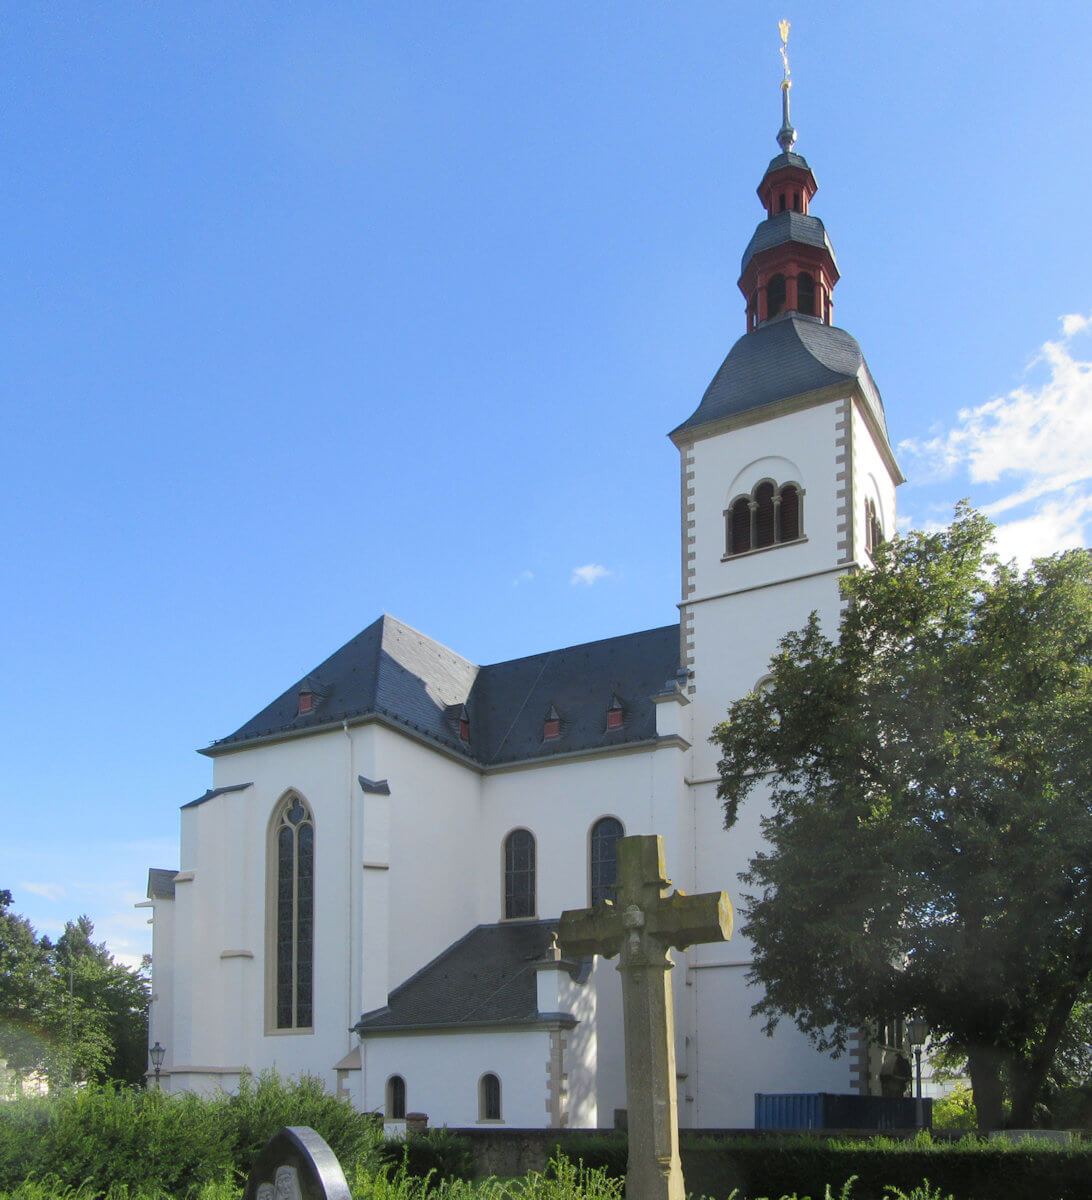 ehemalige Stiftskirche, heute die Pfarrkirche Sankt-Peter in Vilich